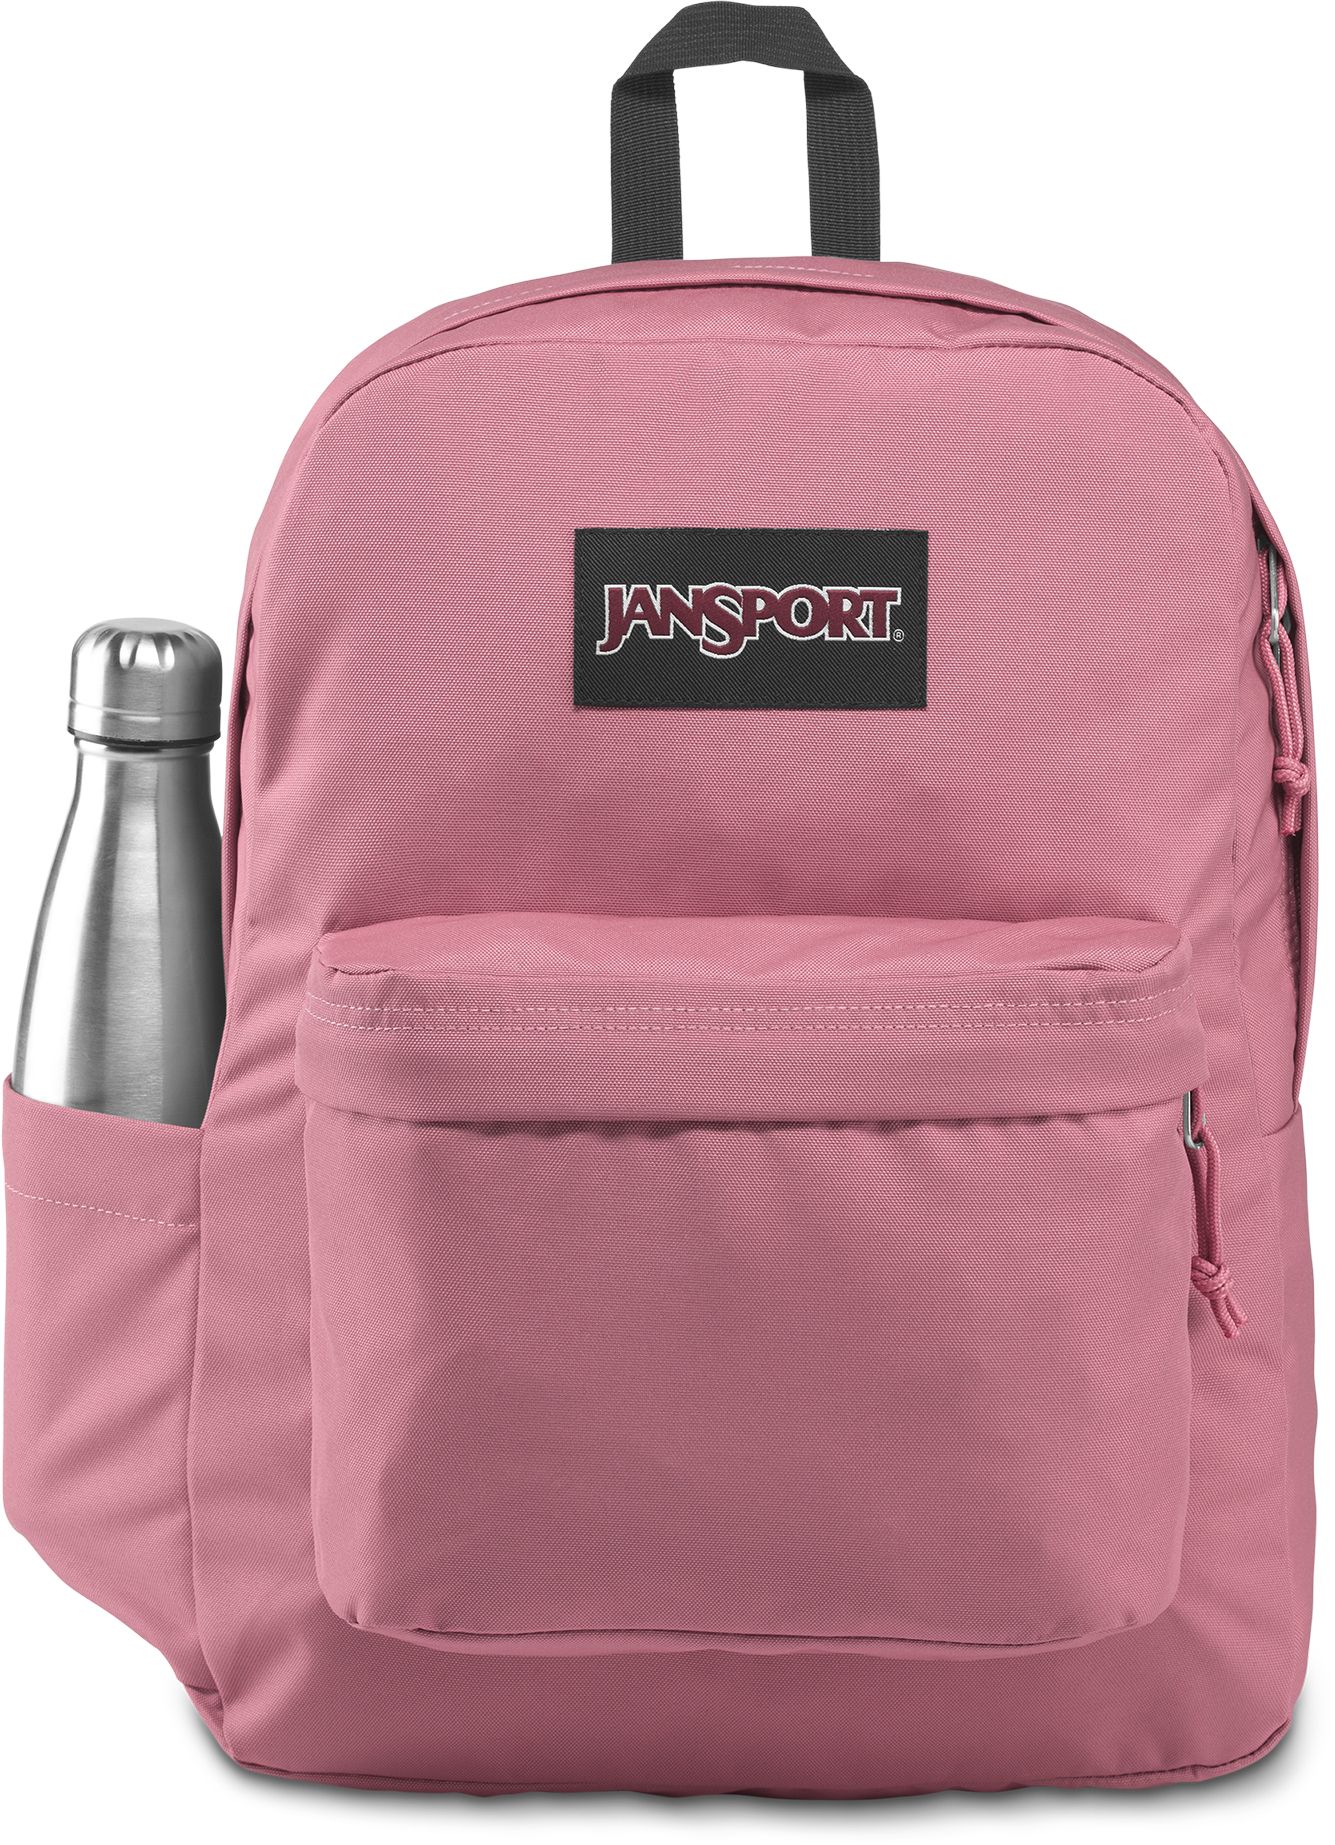 reebok one series medium backpack